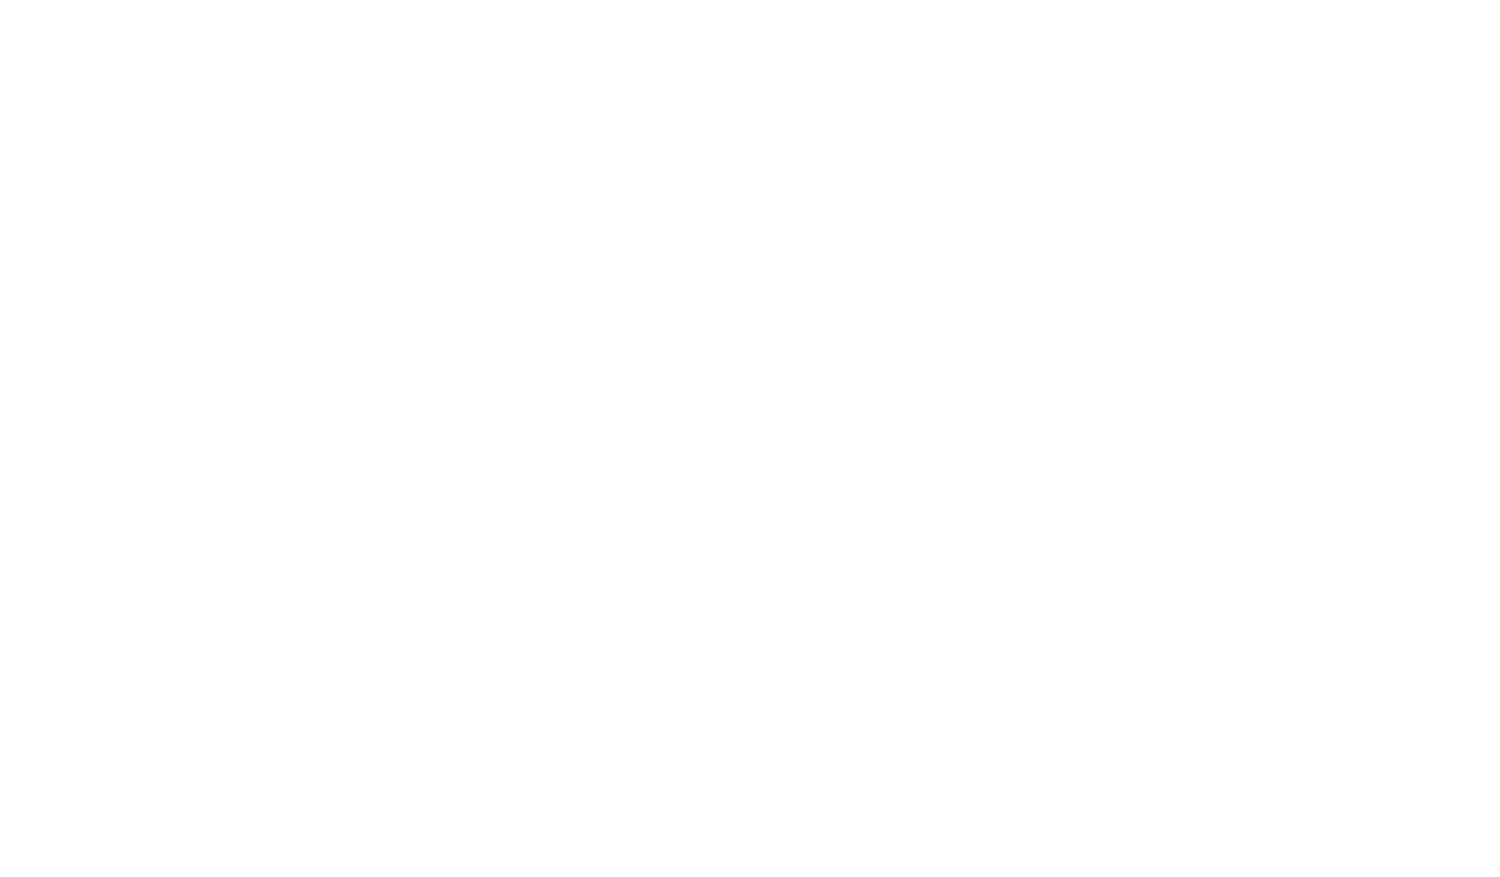 Joe Granato Produce